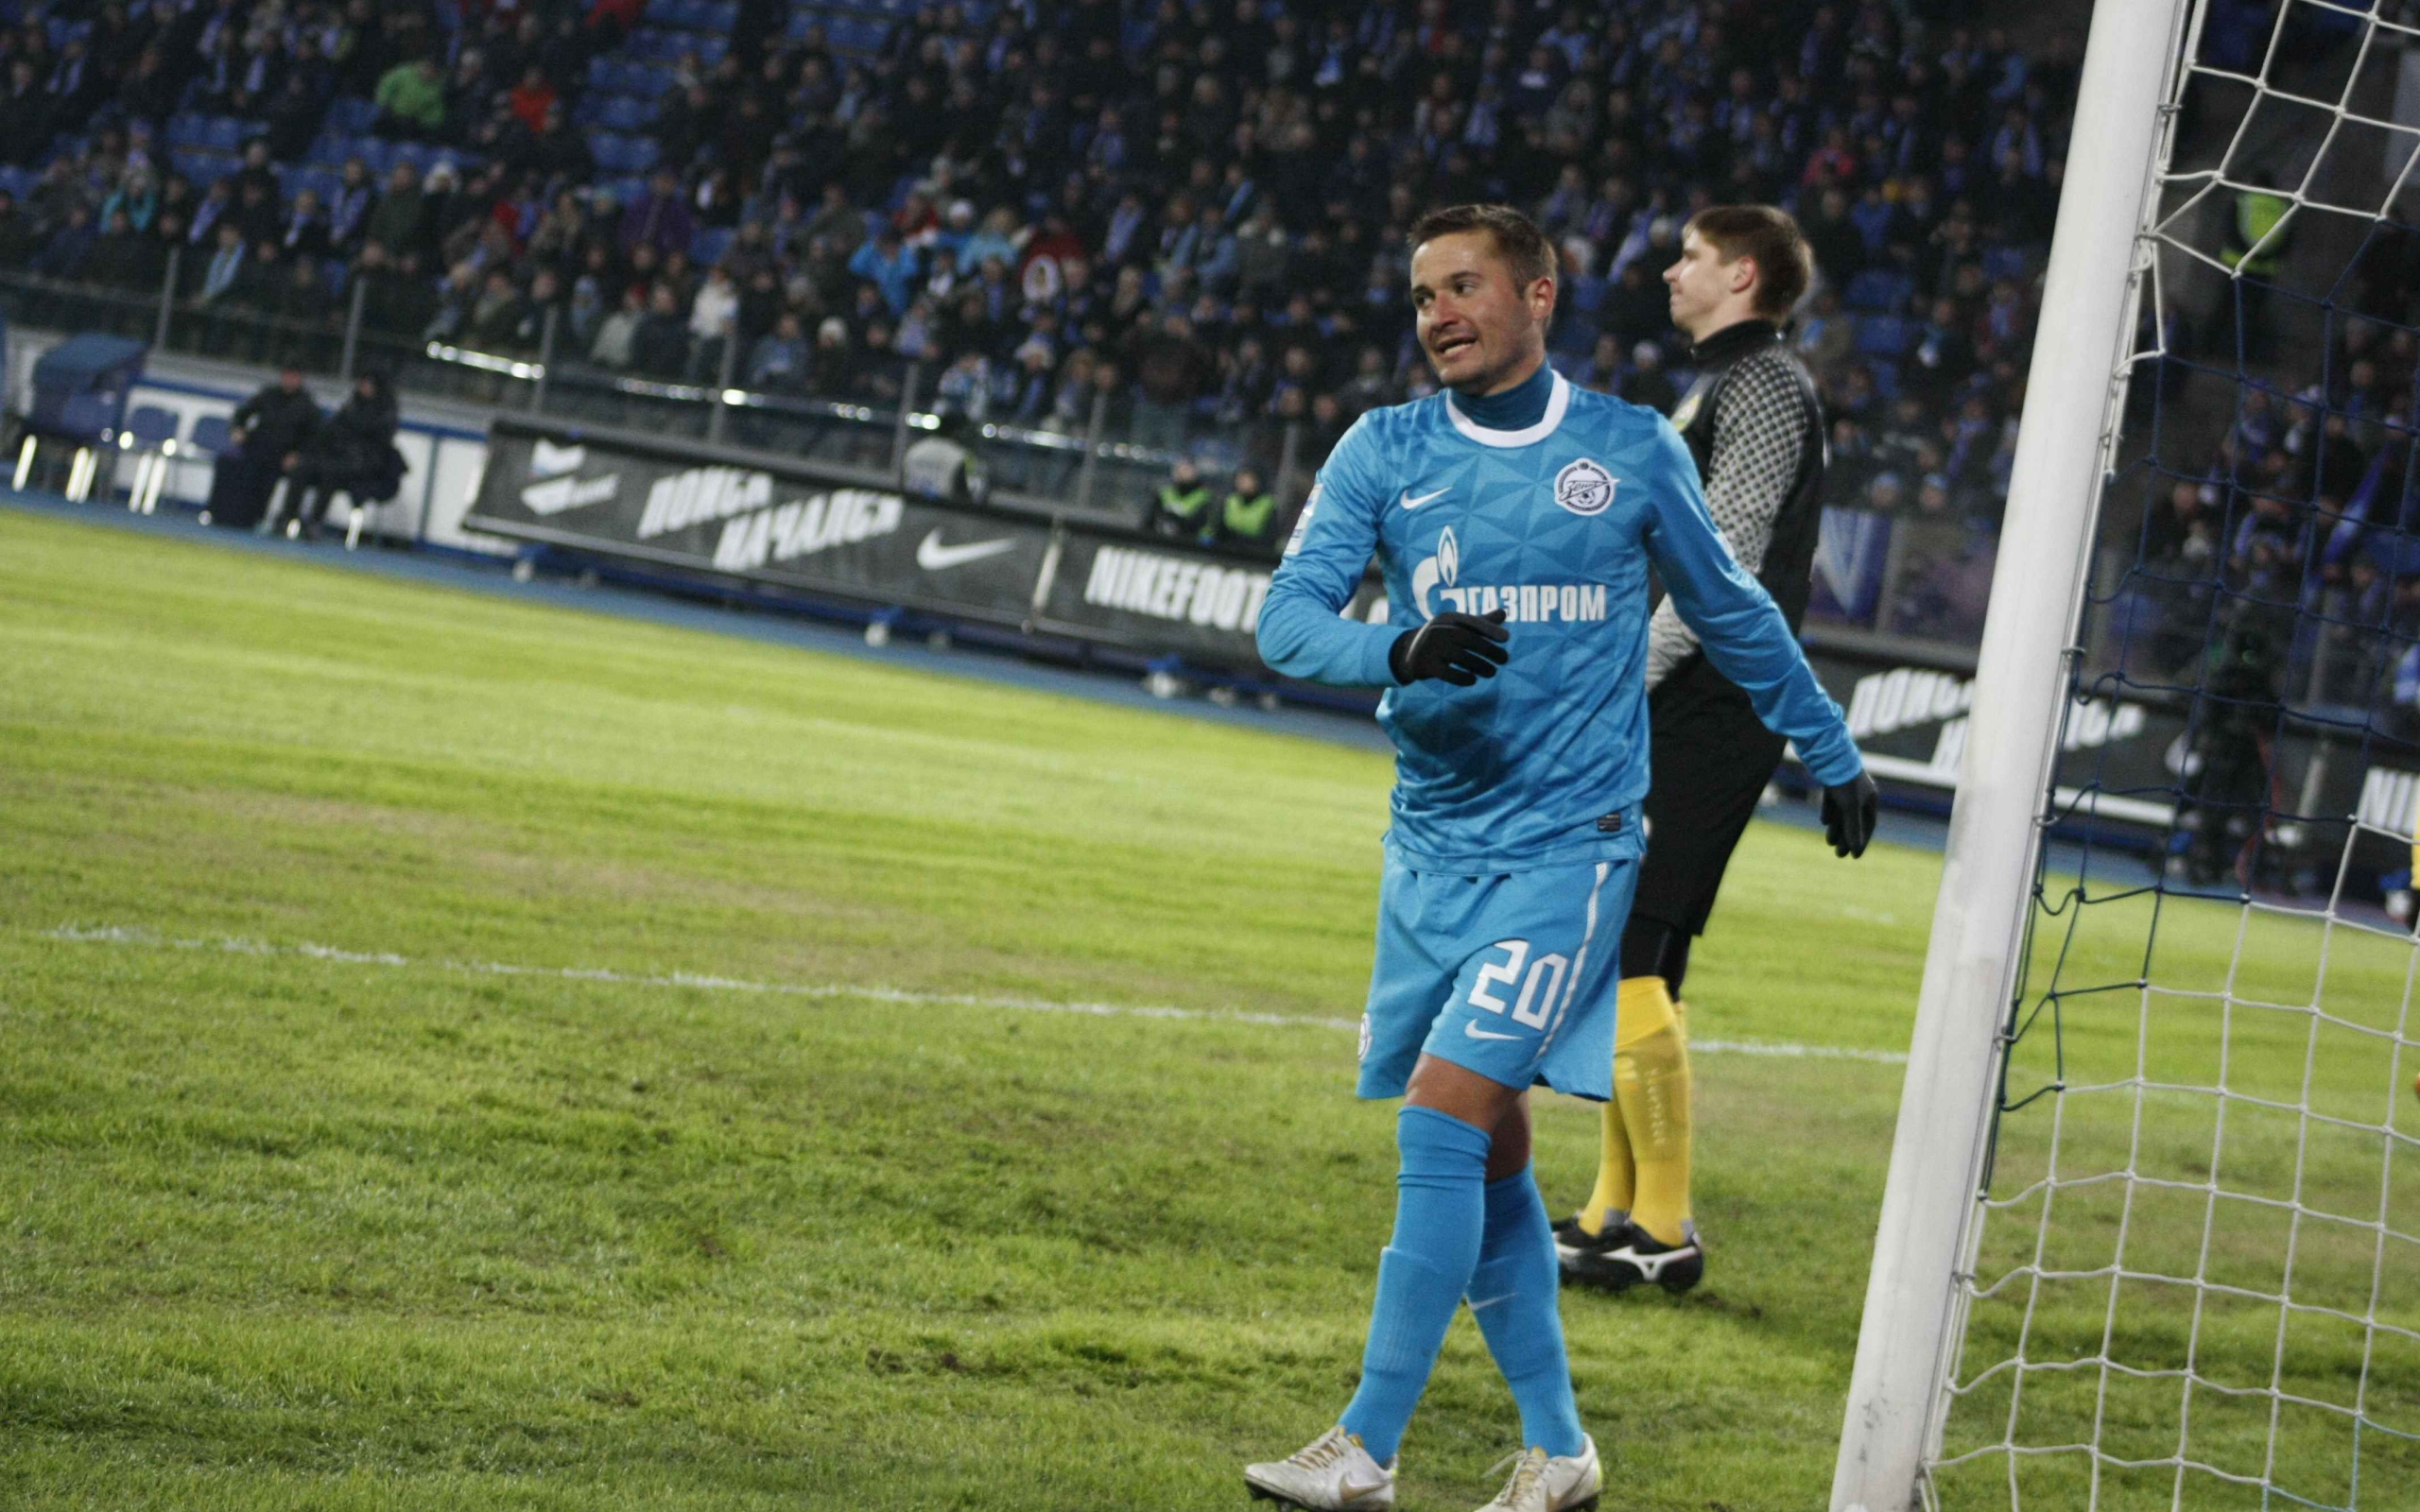 Zenit midfielder Victor Fayzulin at the gate